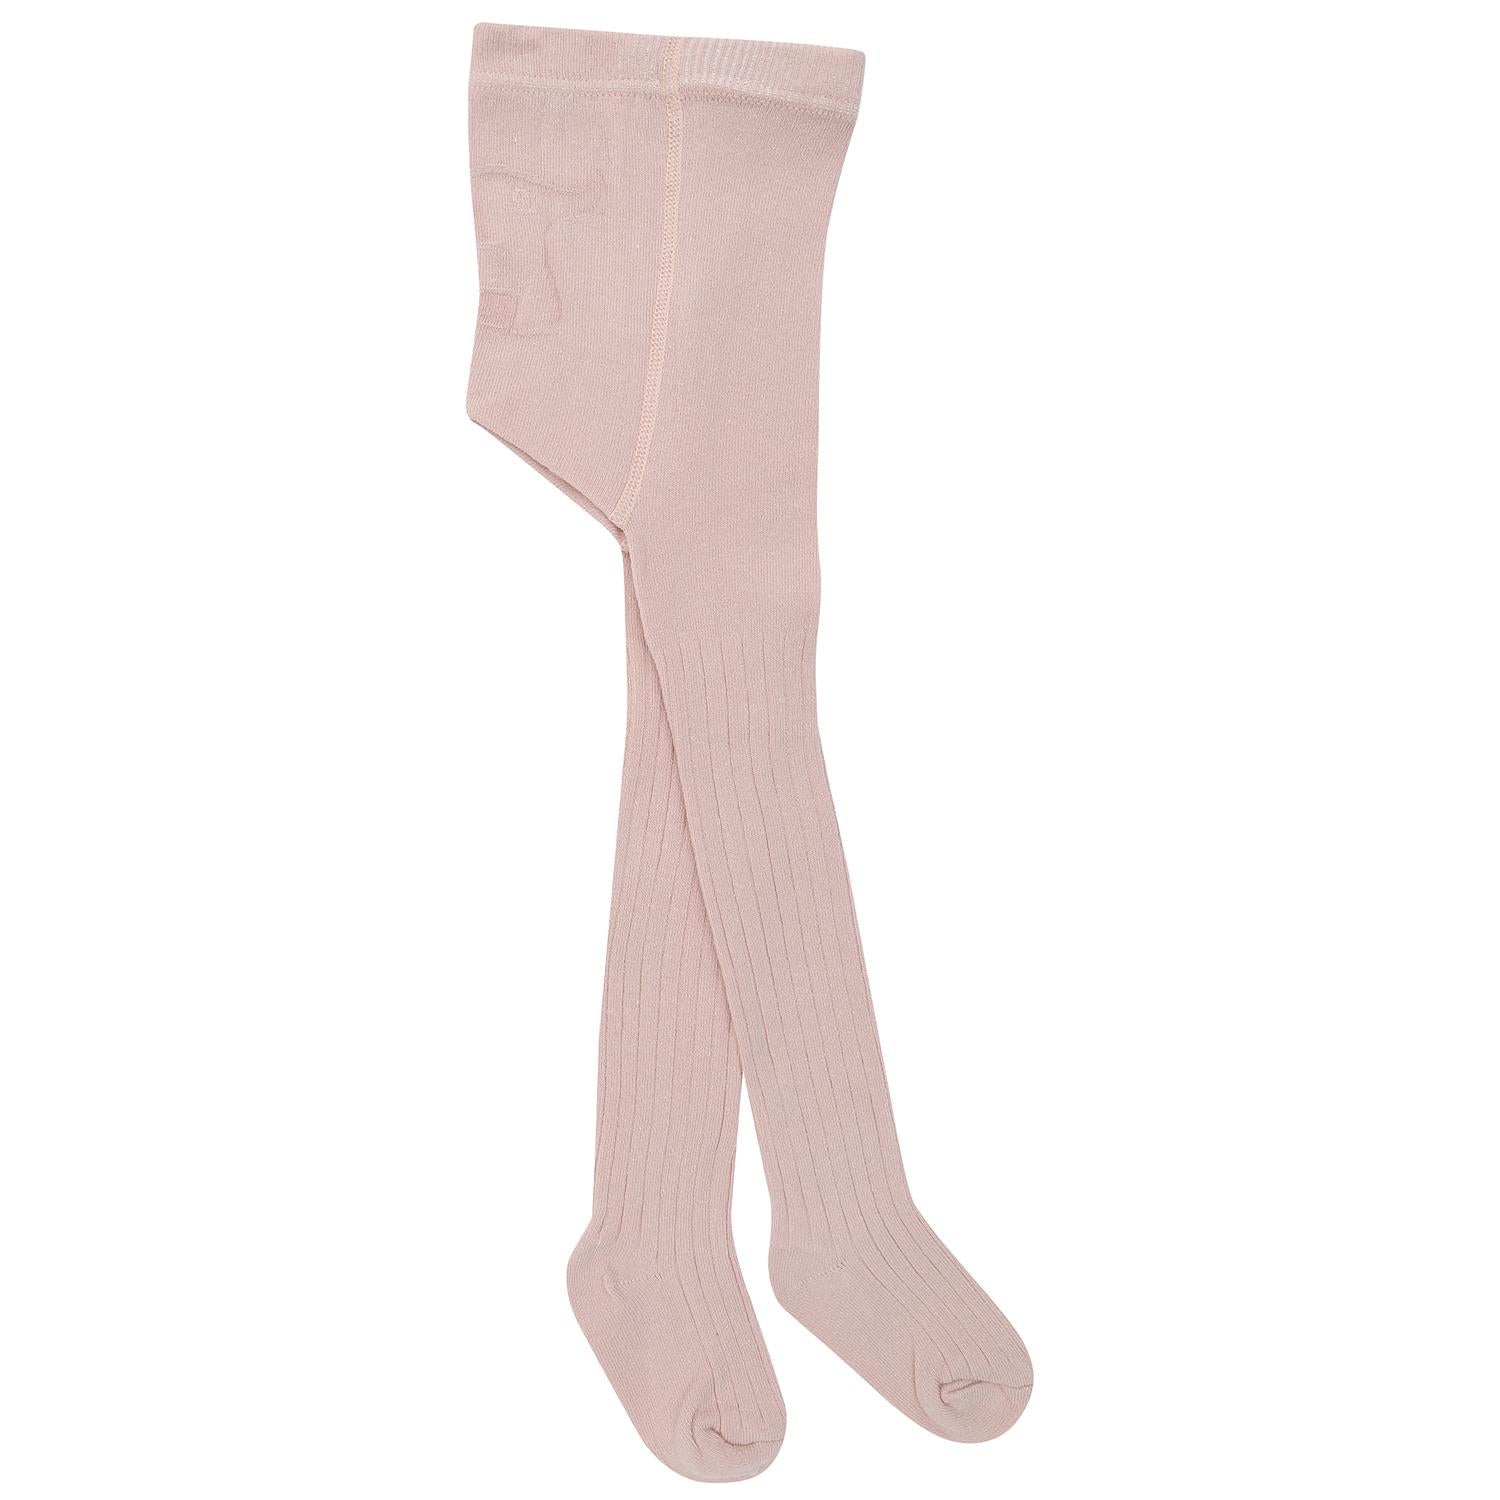 Pantyhose Cotton Baby  Socks Pink